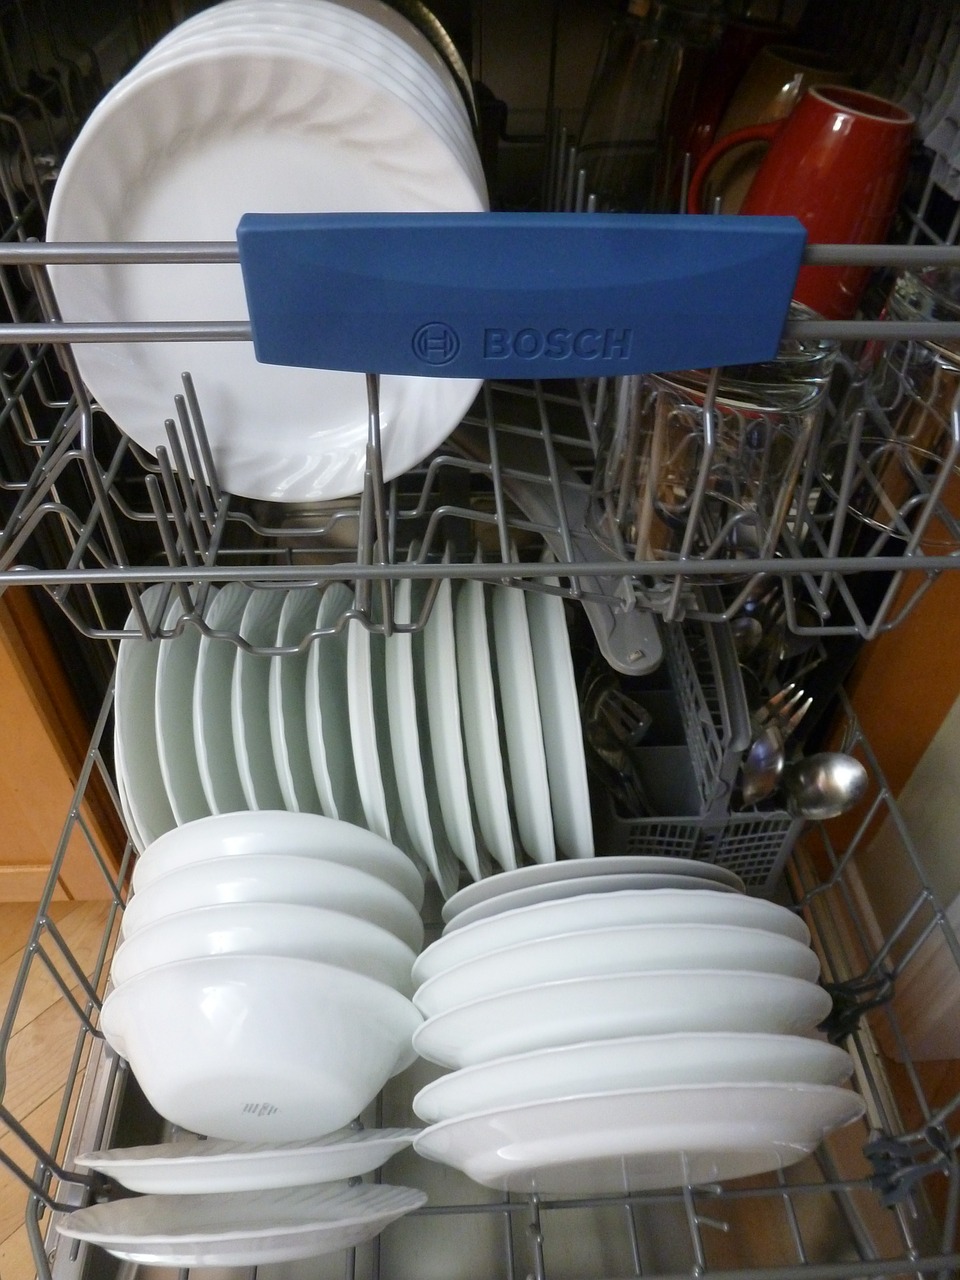 dishwasher interior dishes free photo